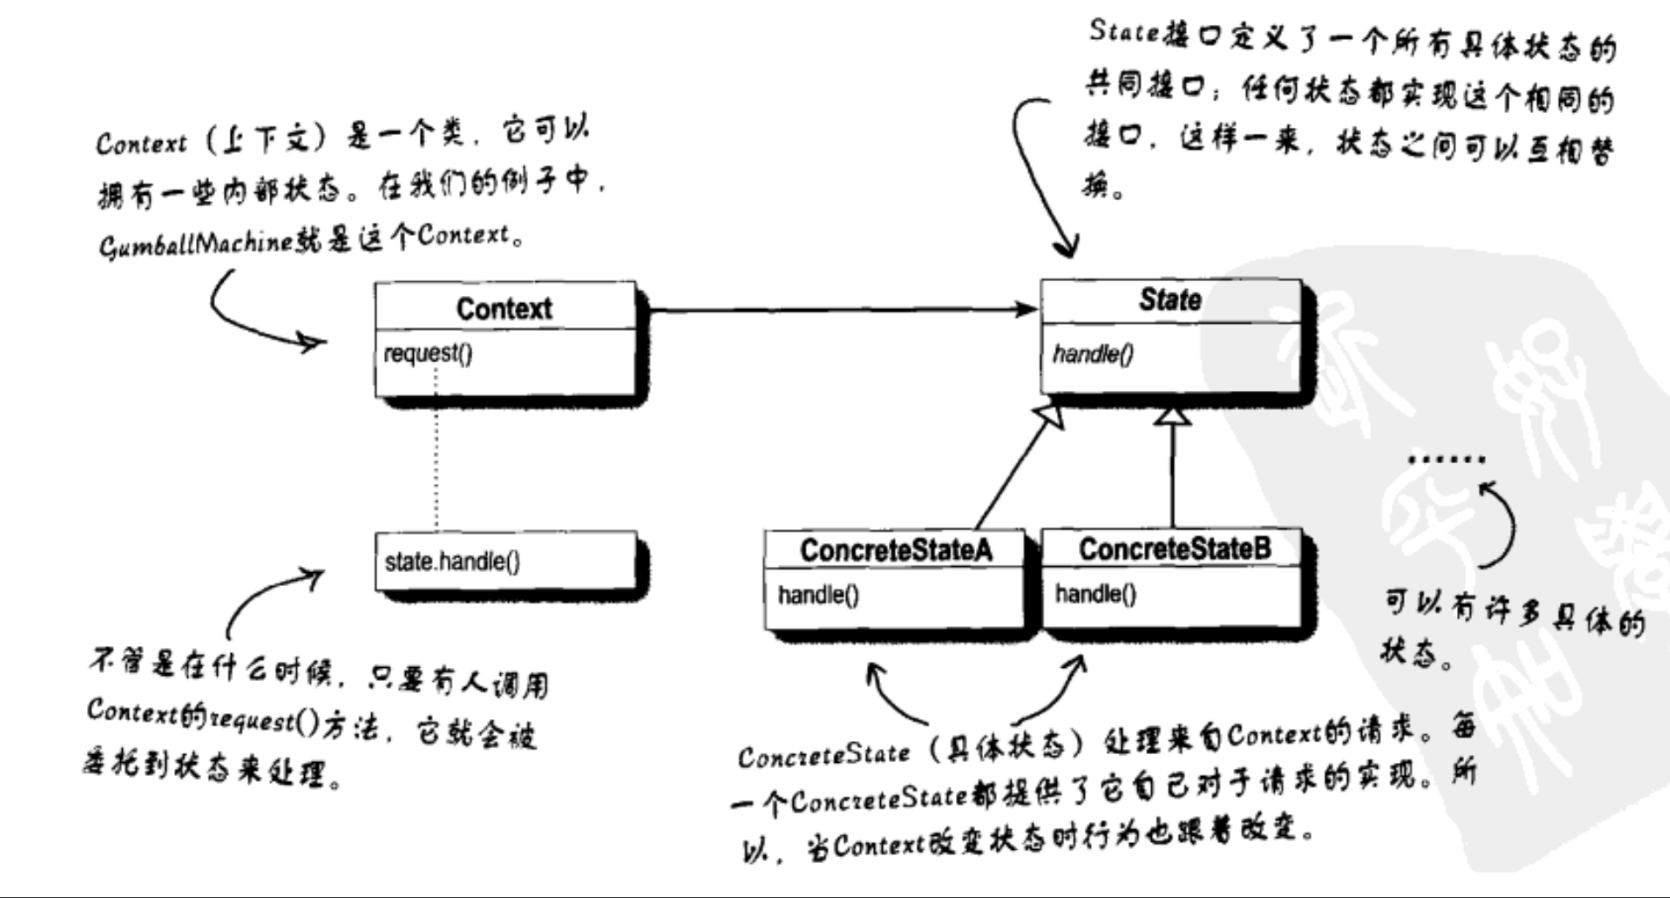 状态模式UML图